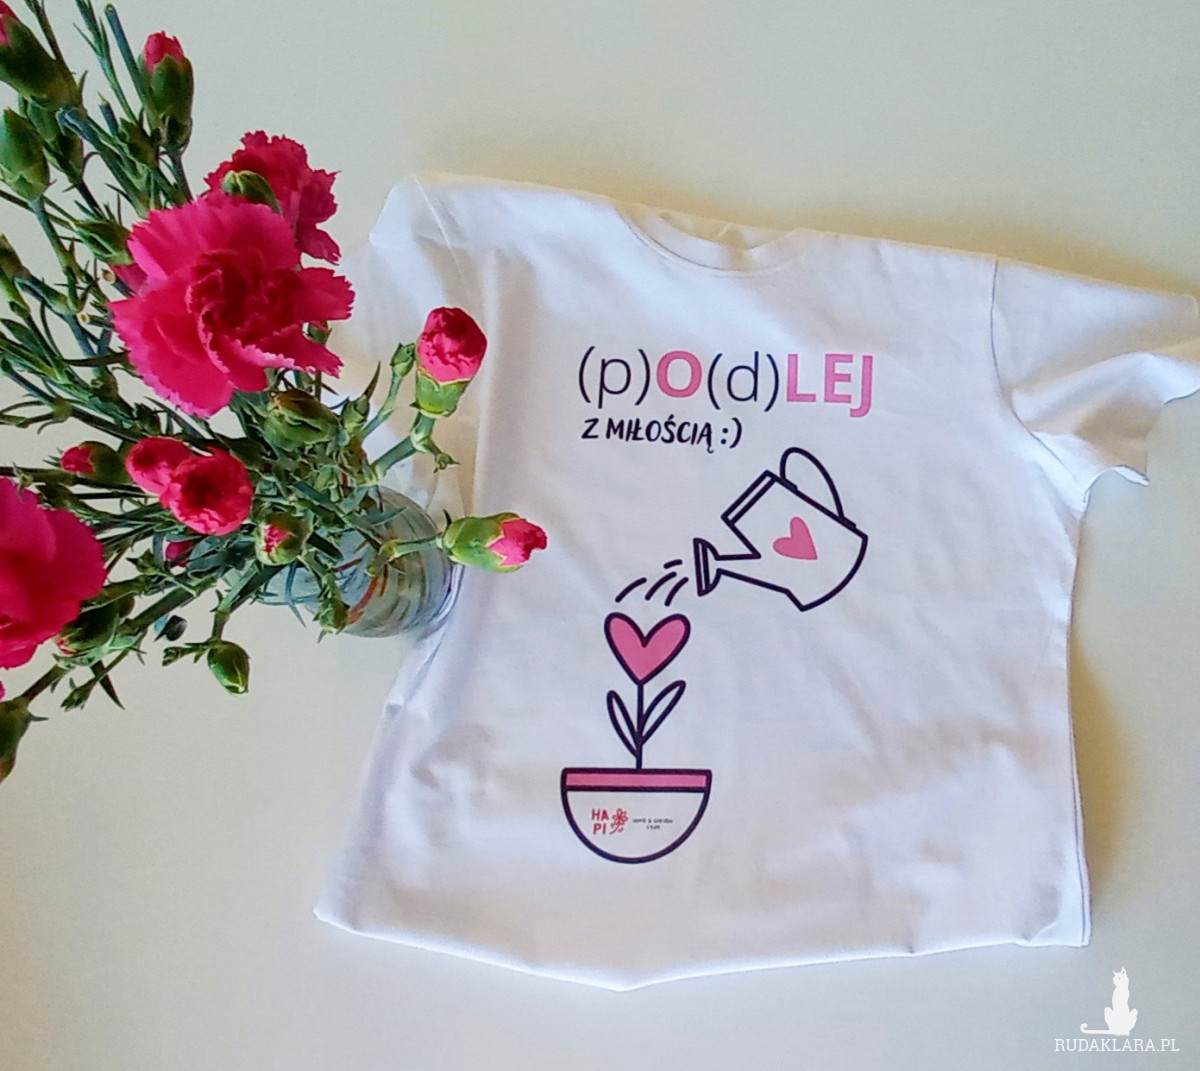 Koszulka T-shirt damski "podlej z miłością". Idealny prezent na dzień Mamy